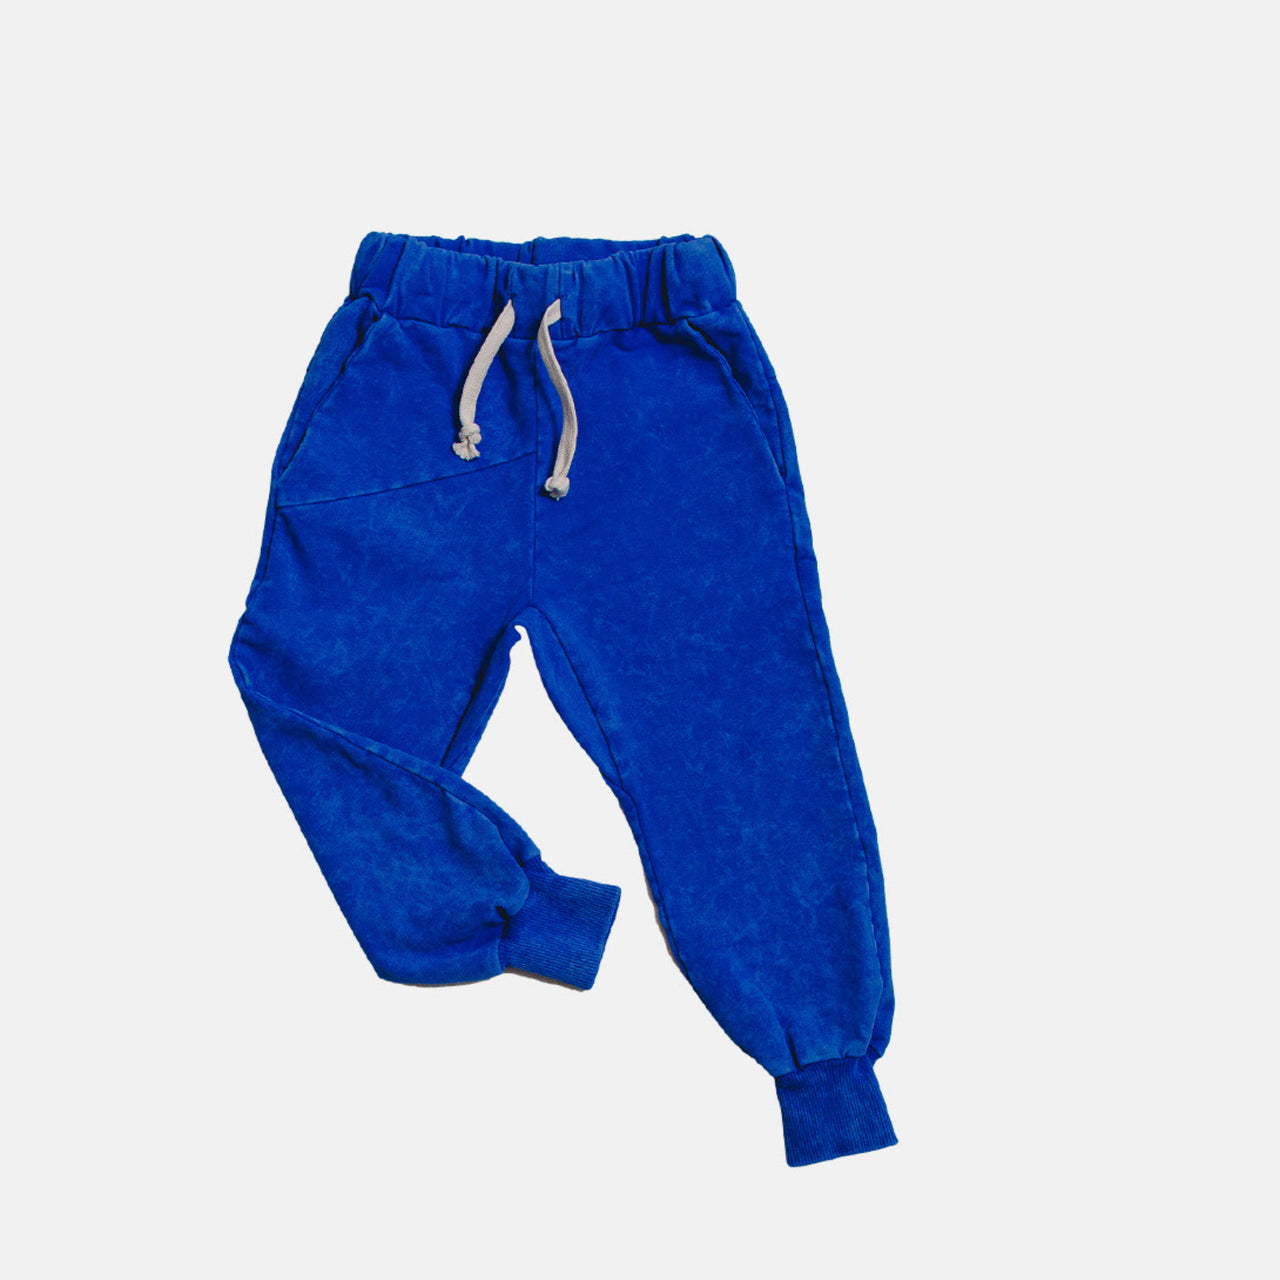 Shape vintage pants blue